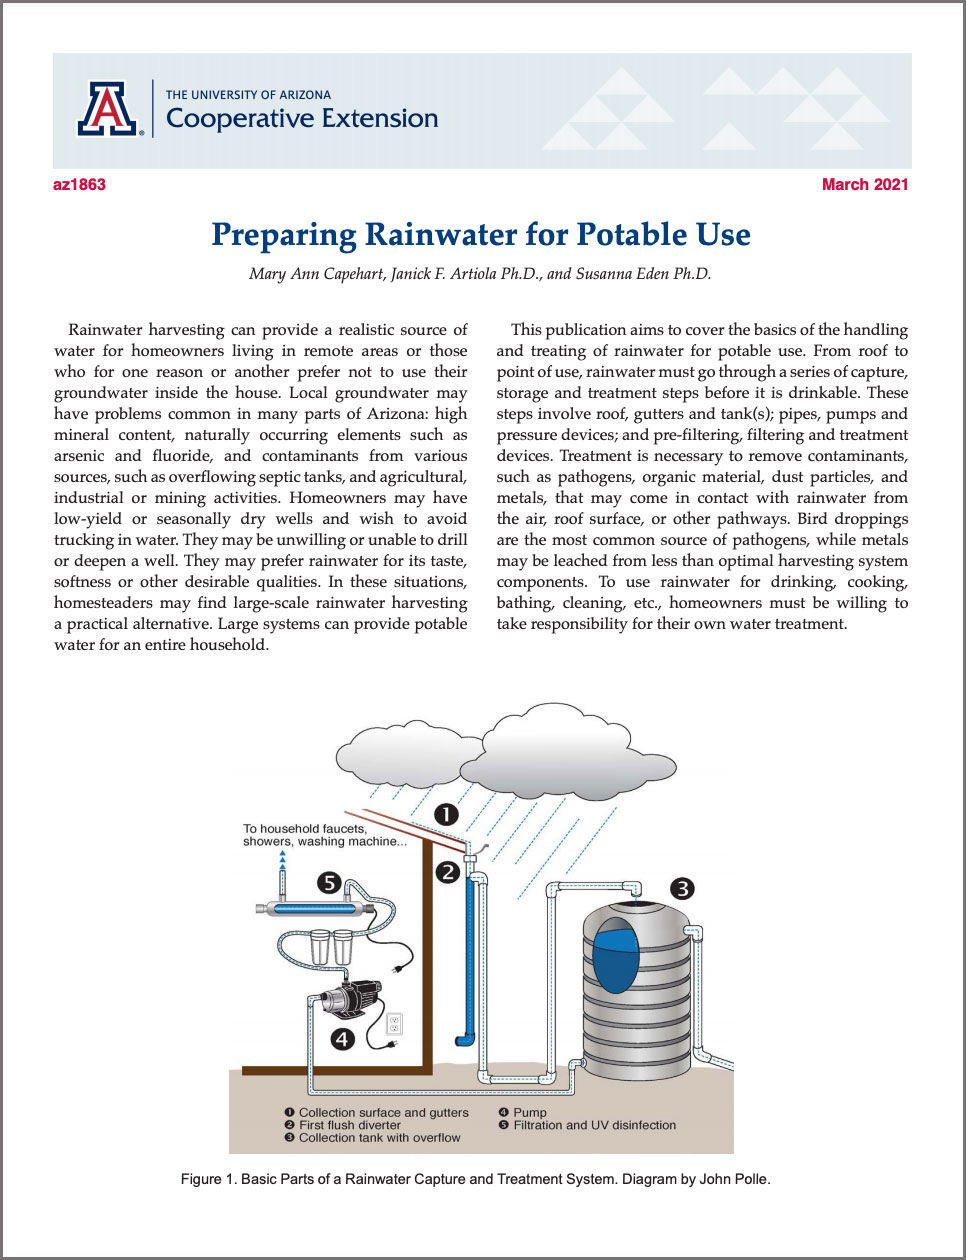 Preparing Rainwater for Potable Use Guide